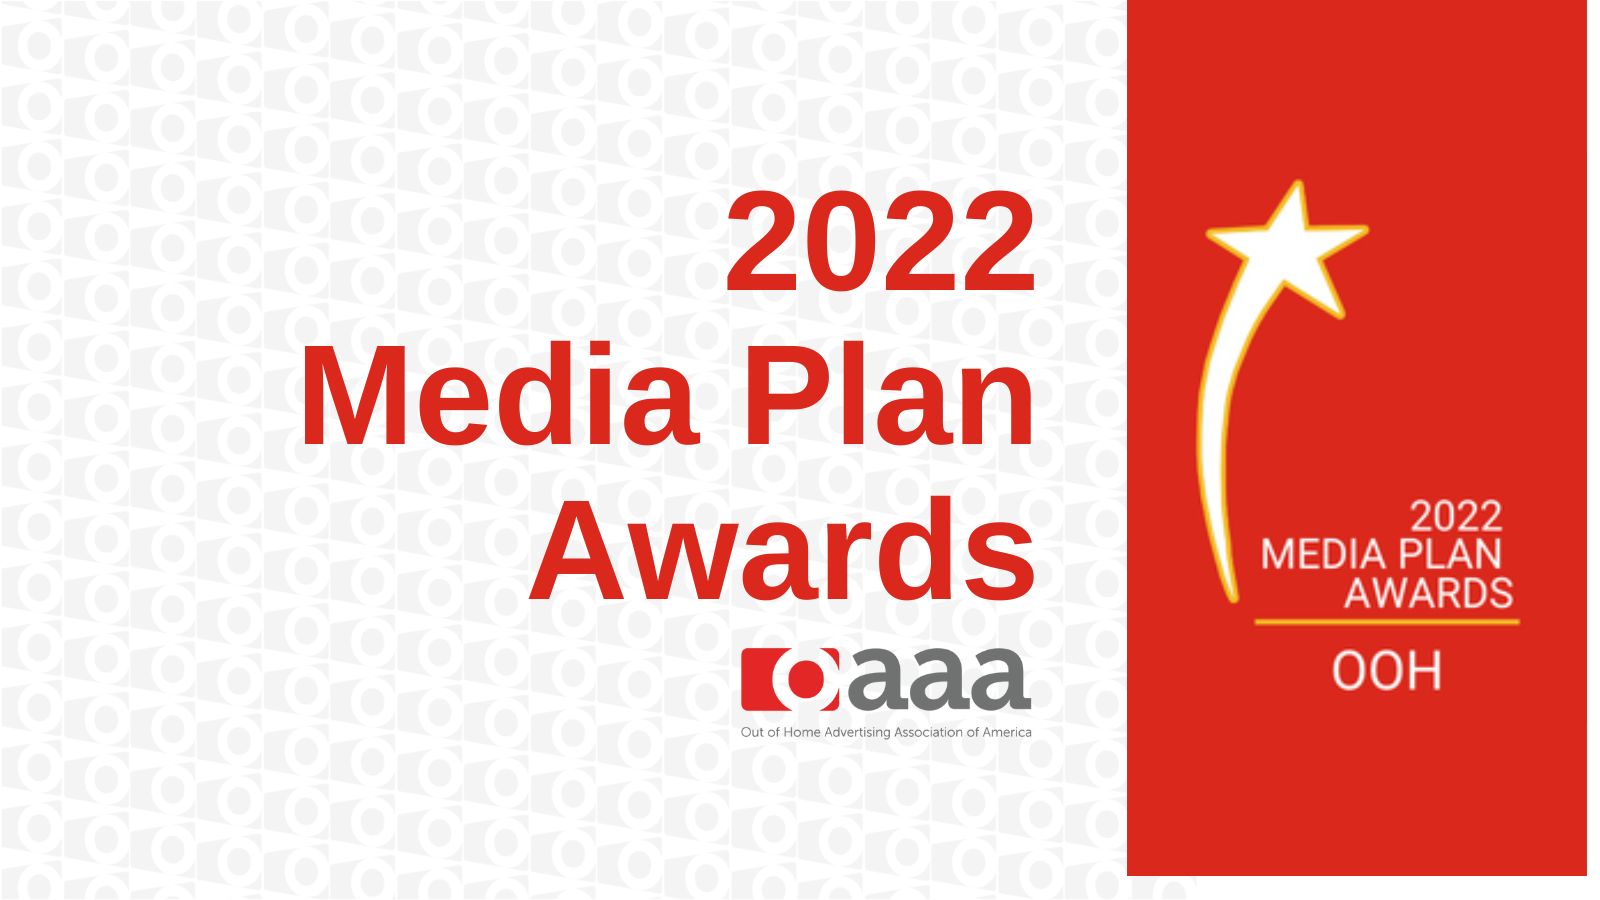 OAAA ANNOUNCES 2022 MEDIA PLAN AWARDS WINNERS